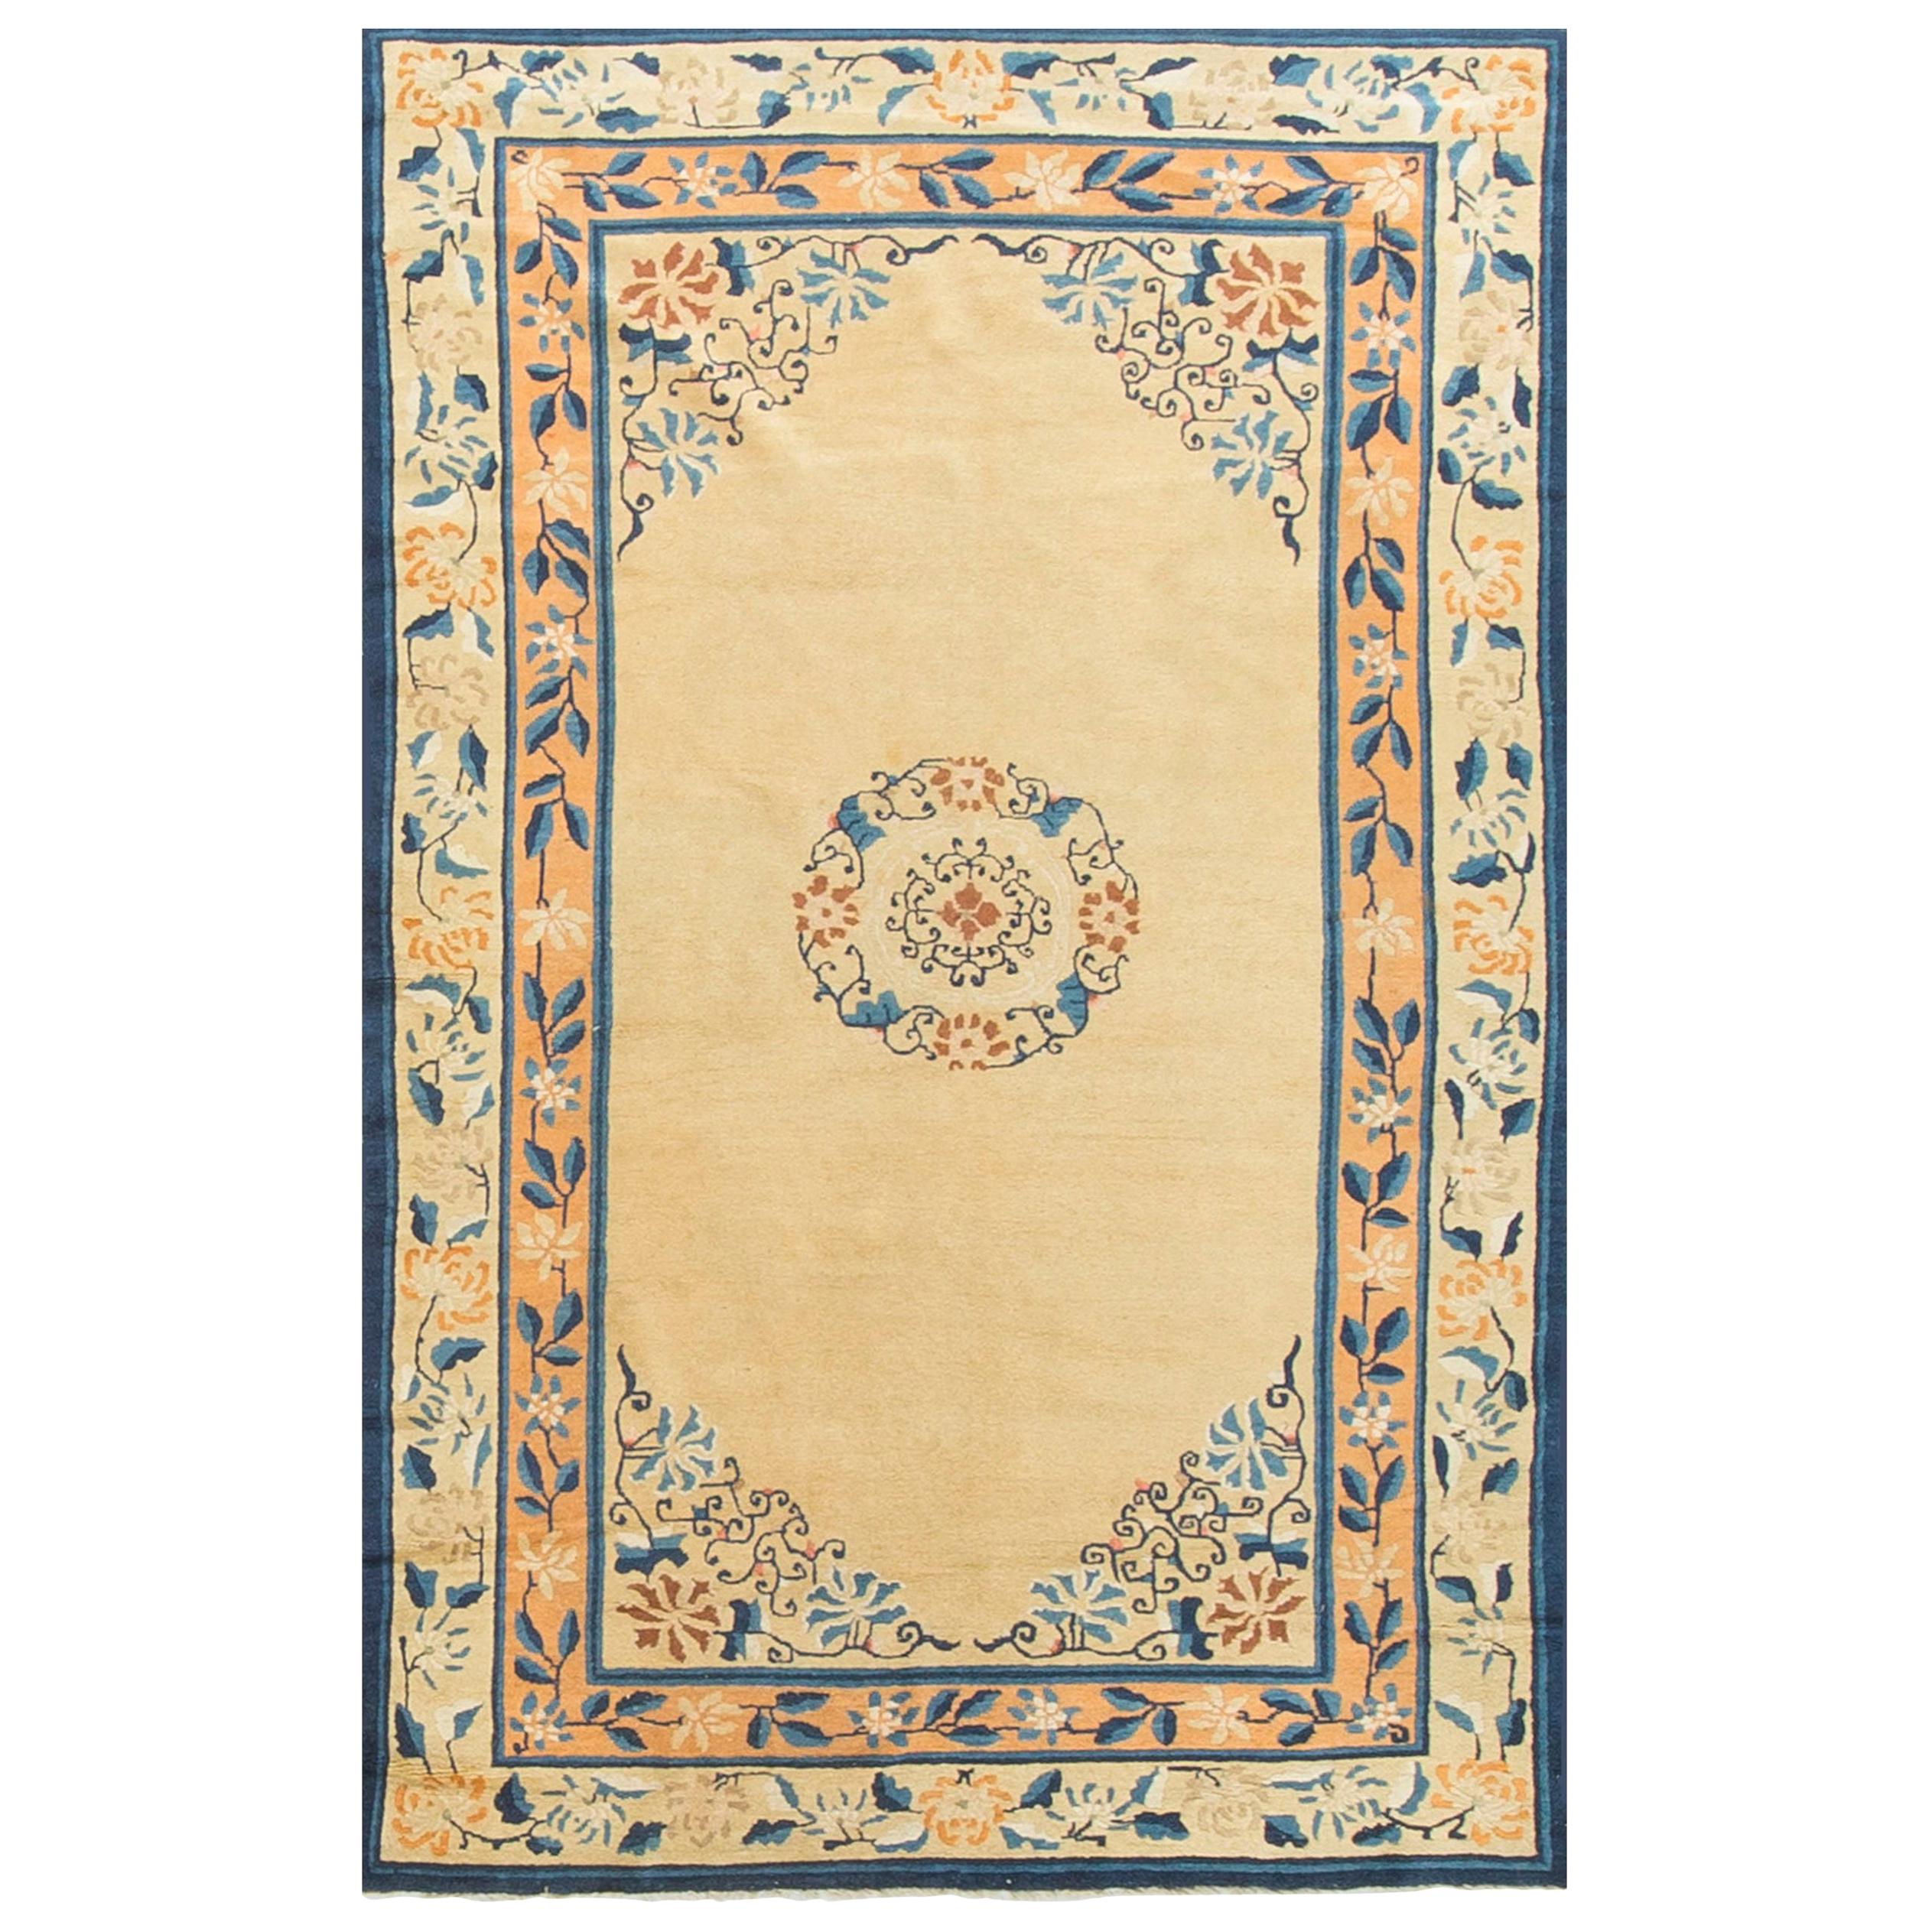 Antiaue Chinese Rug, Carpet, circa 1890